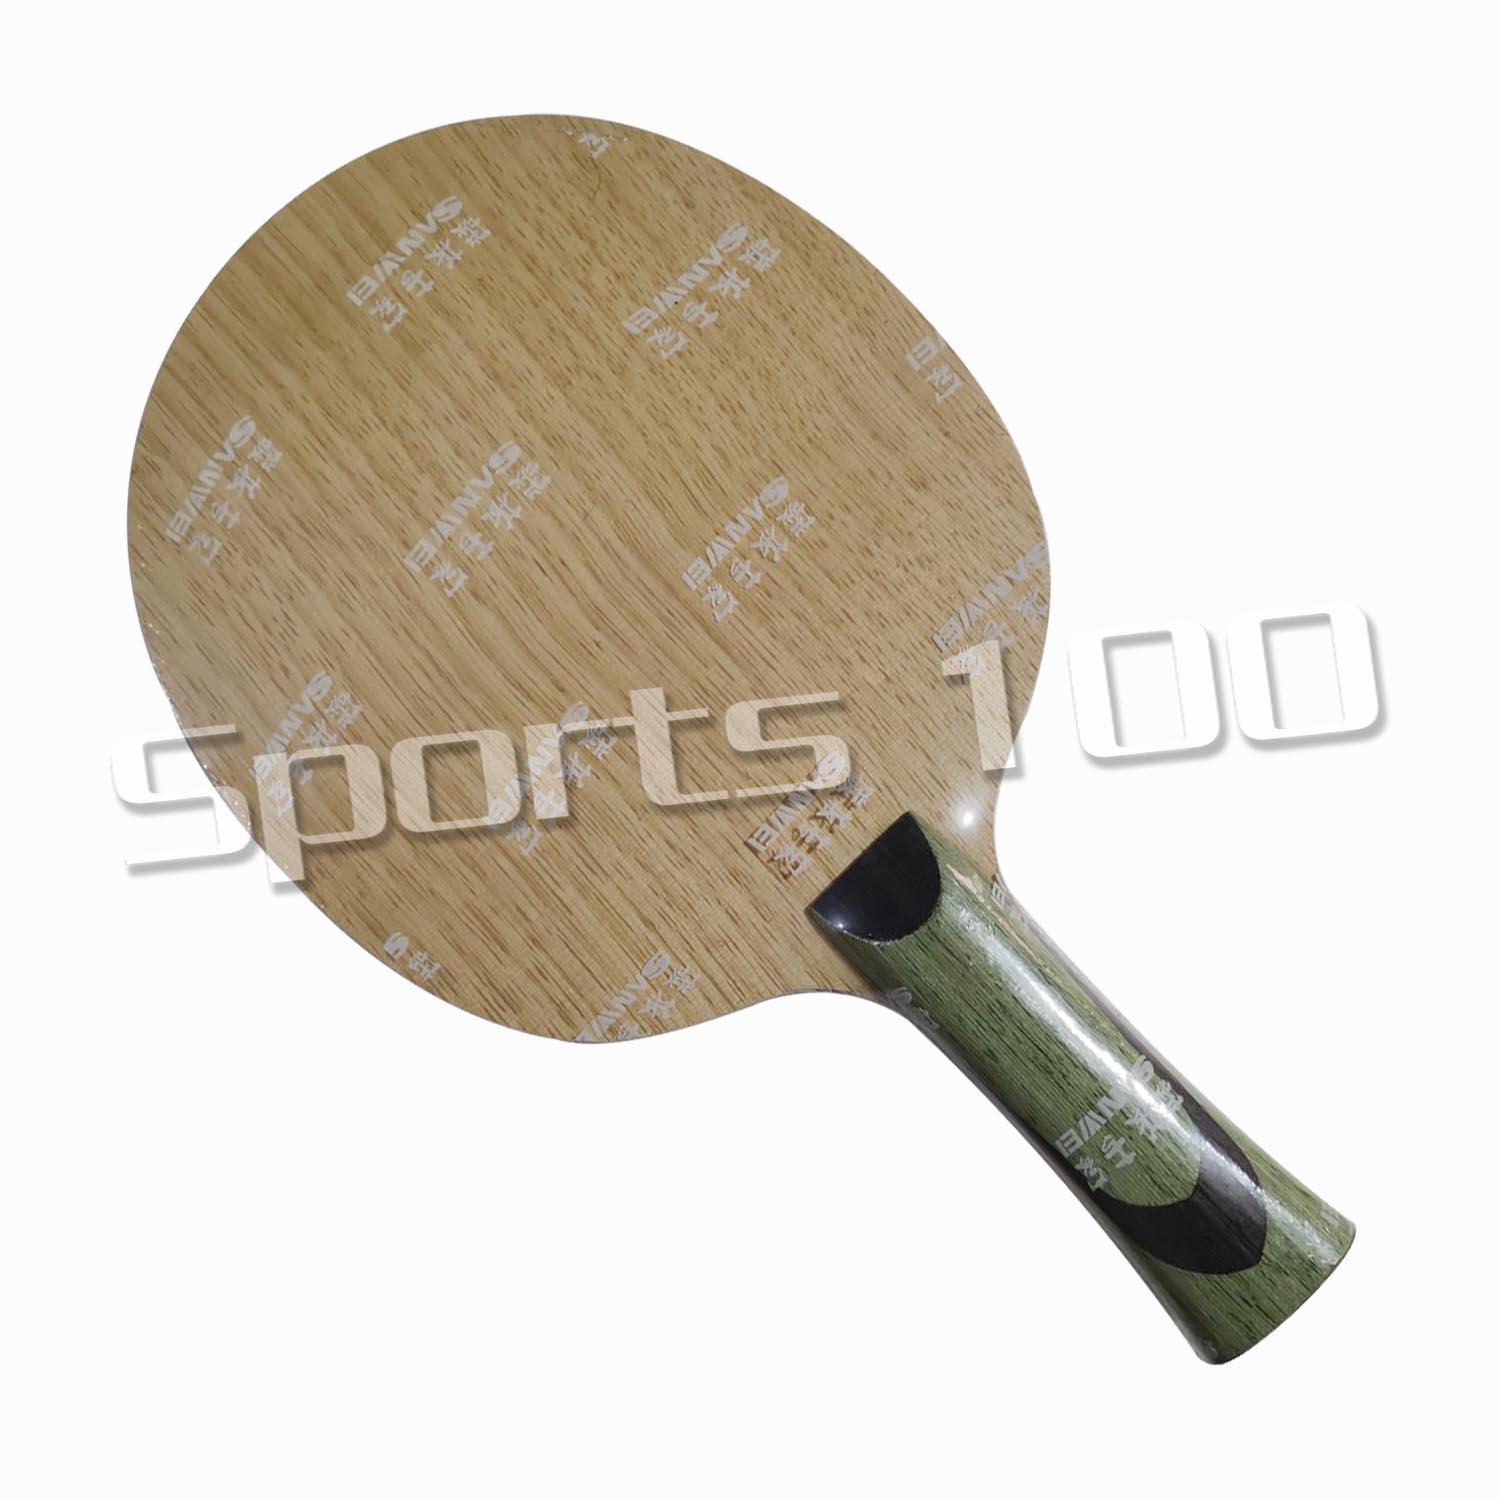 Изображение товара: Sanwei белый даже настольный теннис лезвие ракетка для Пинг-Понга Летучая мышь весло бесплатная доставка